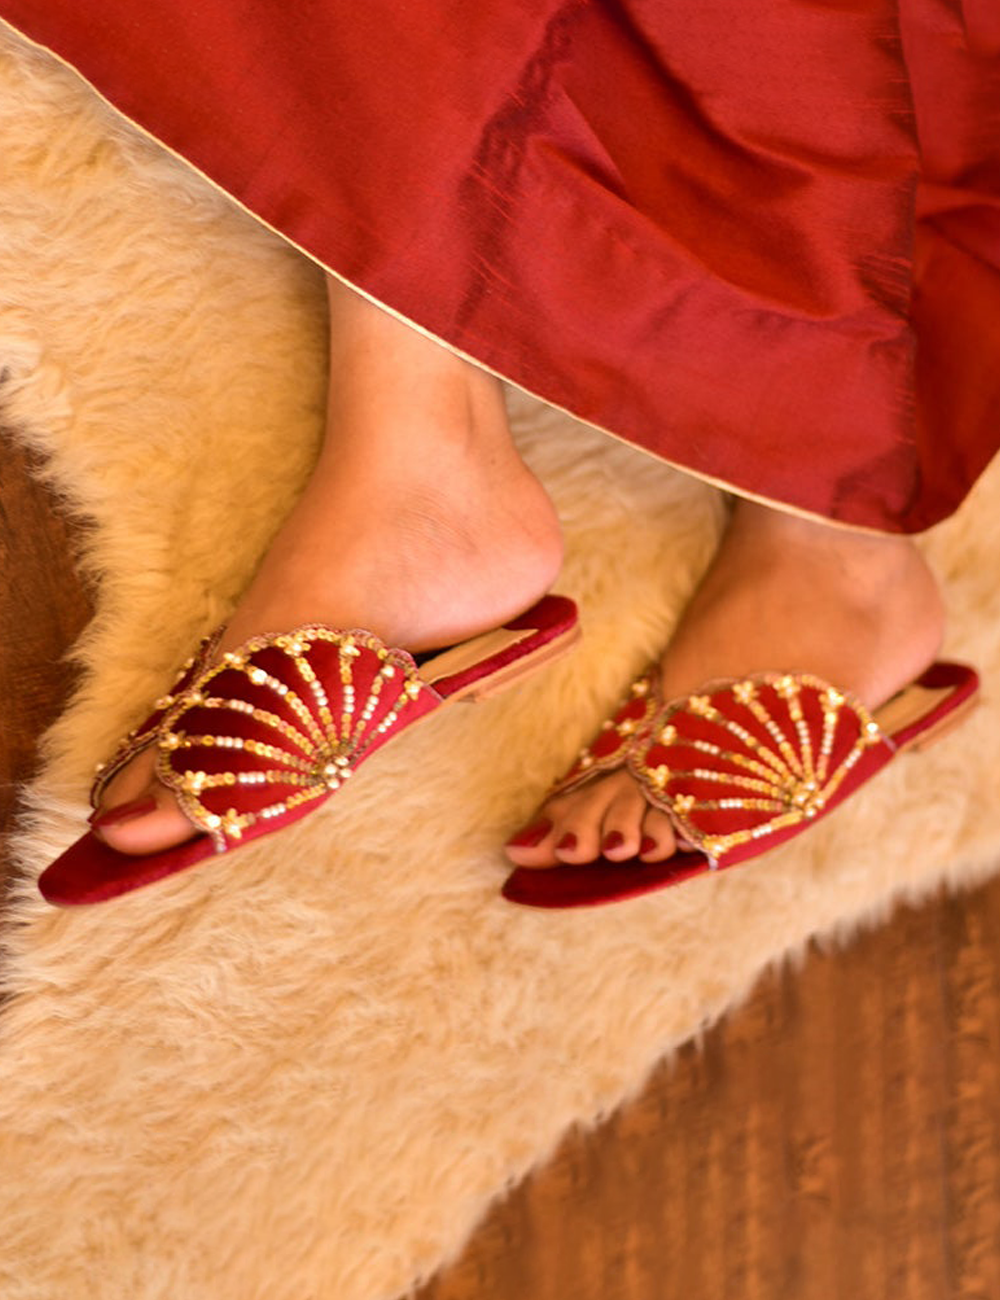 Red Fancy Bridal Wear Slippers